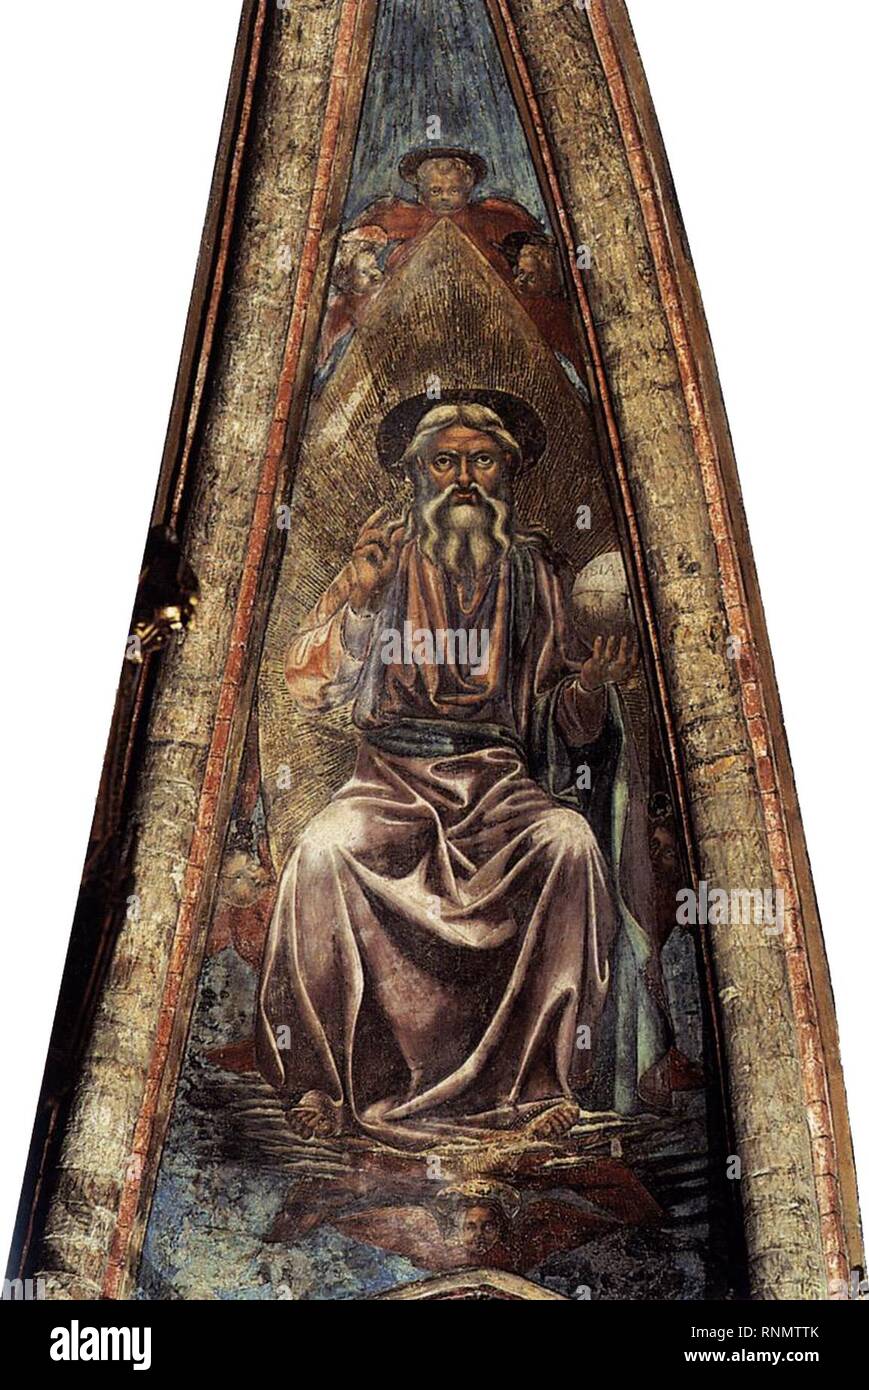 Andrea del castagno, affreschi di san zaccaria, dio padre. Stock Photo